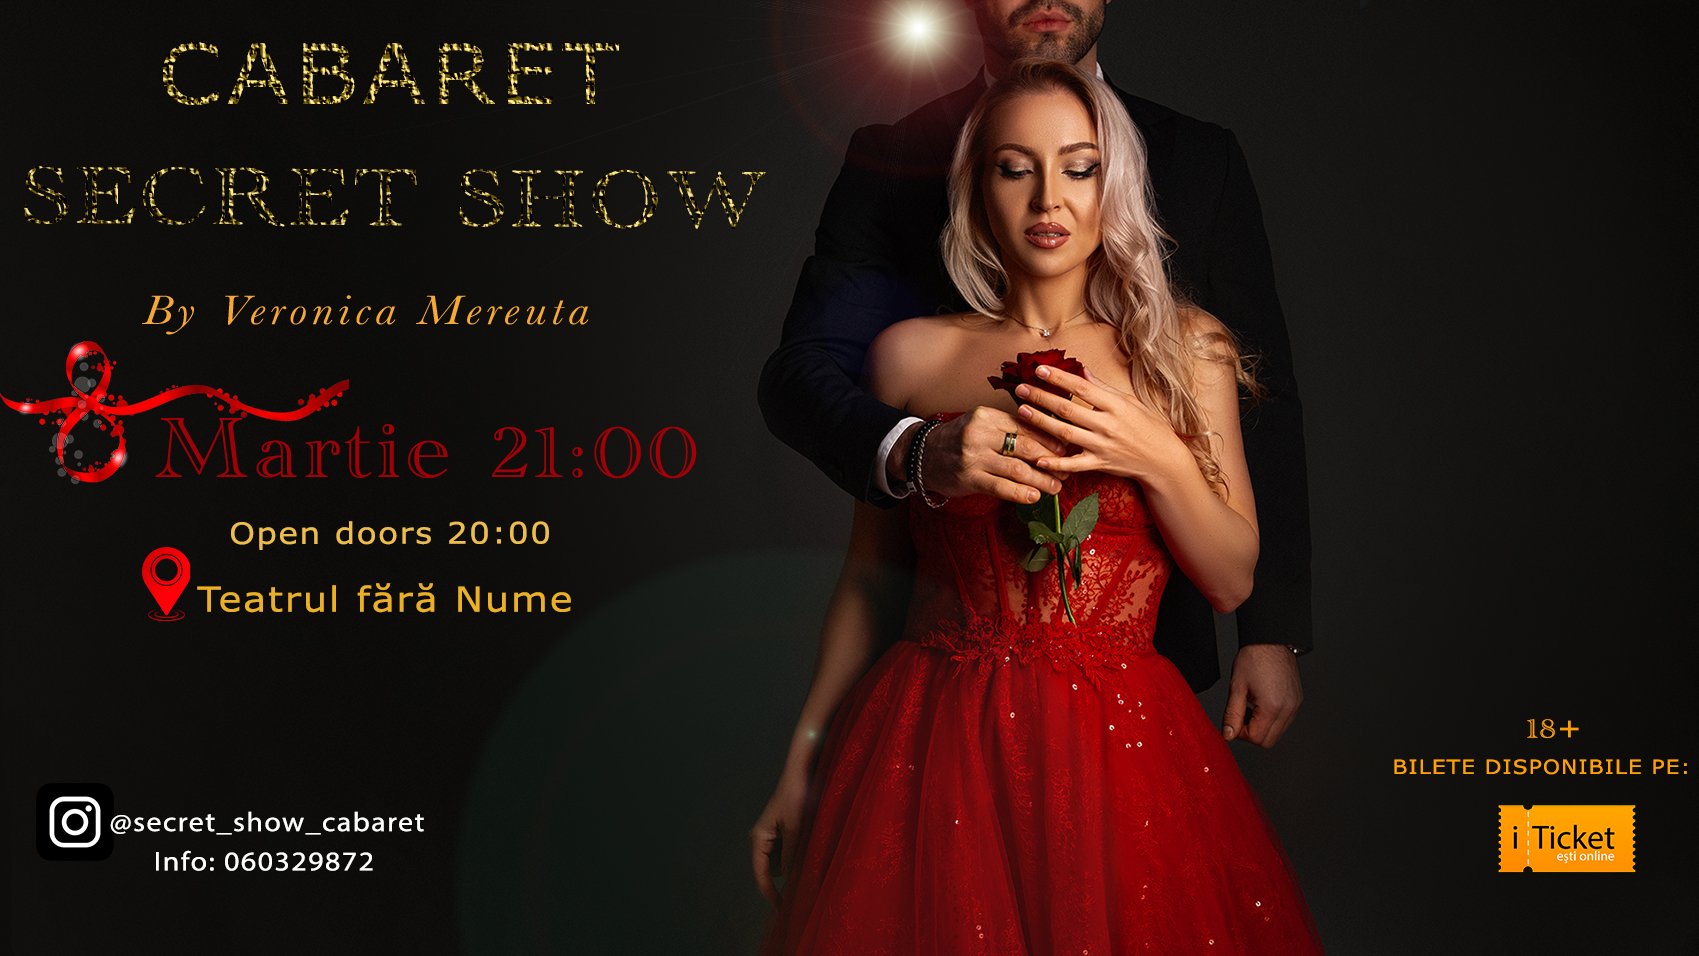 Secret Show Cabaret